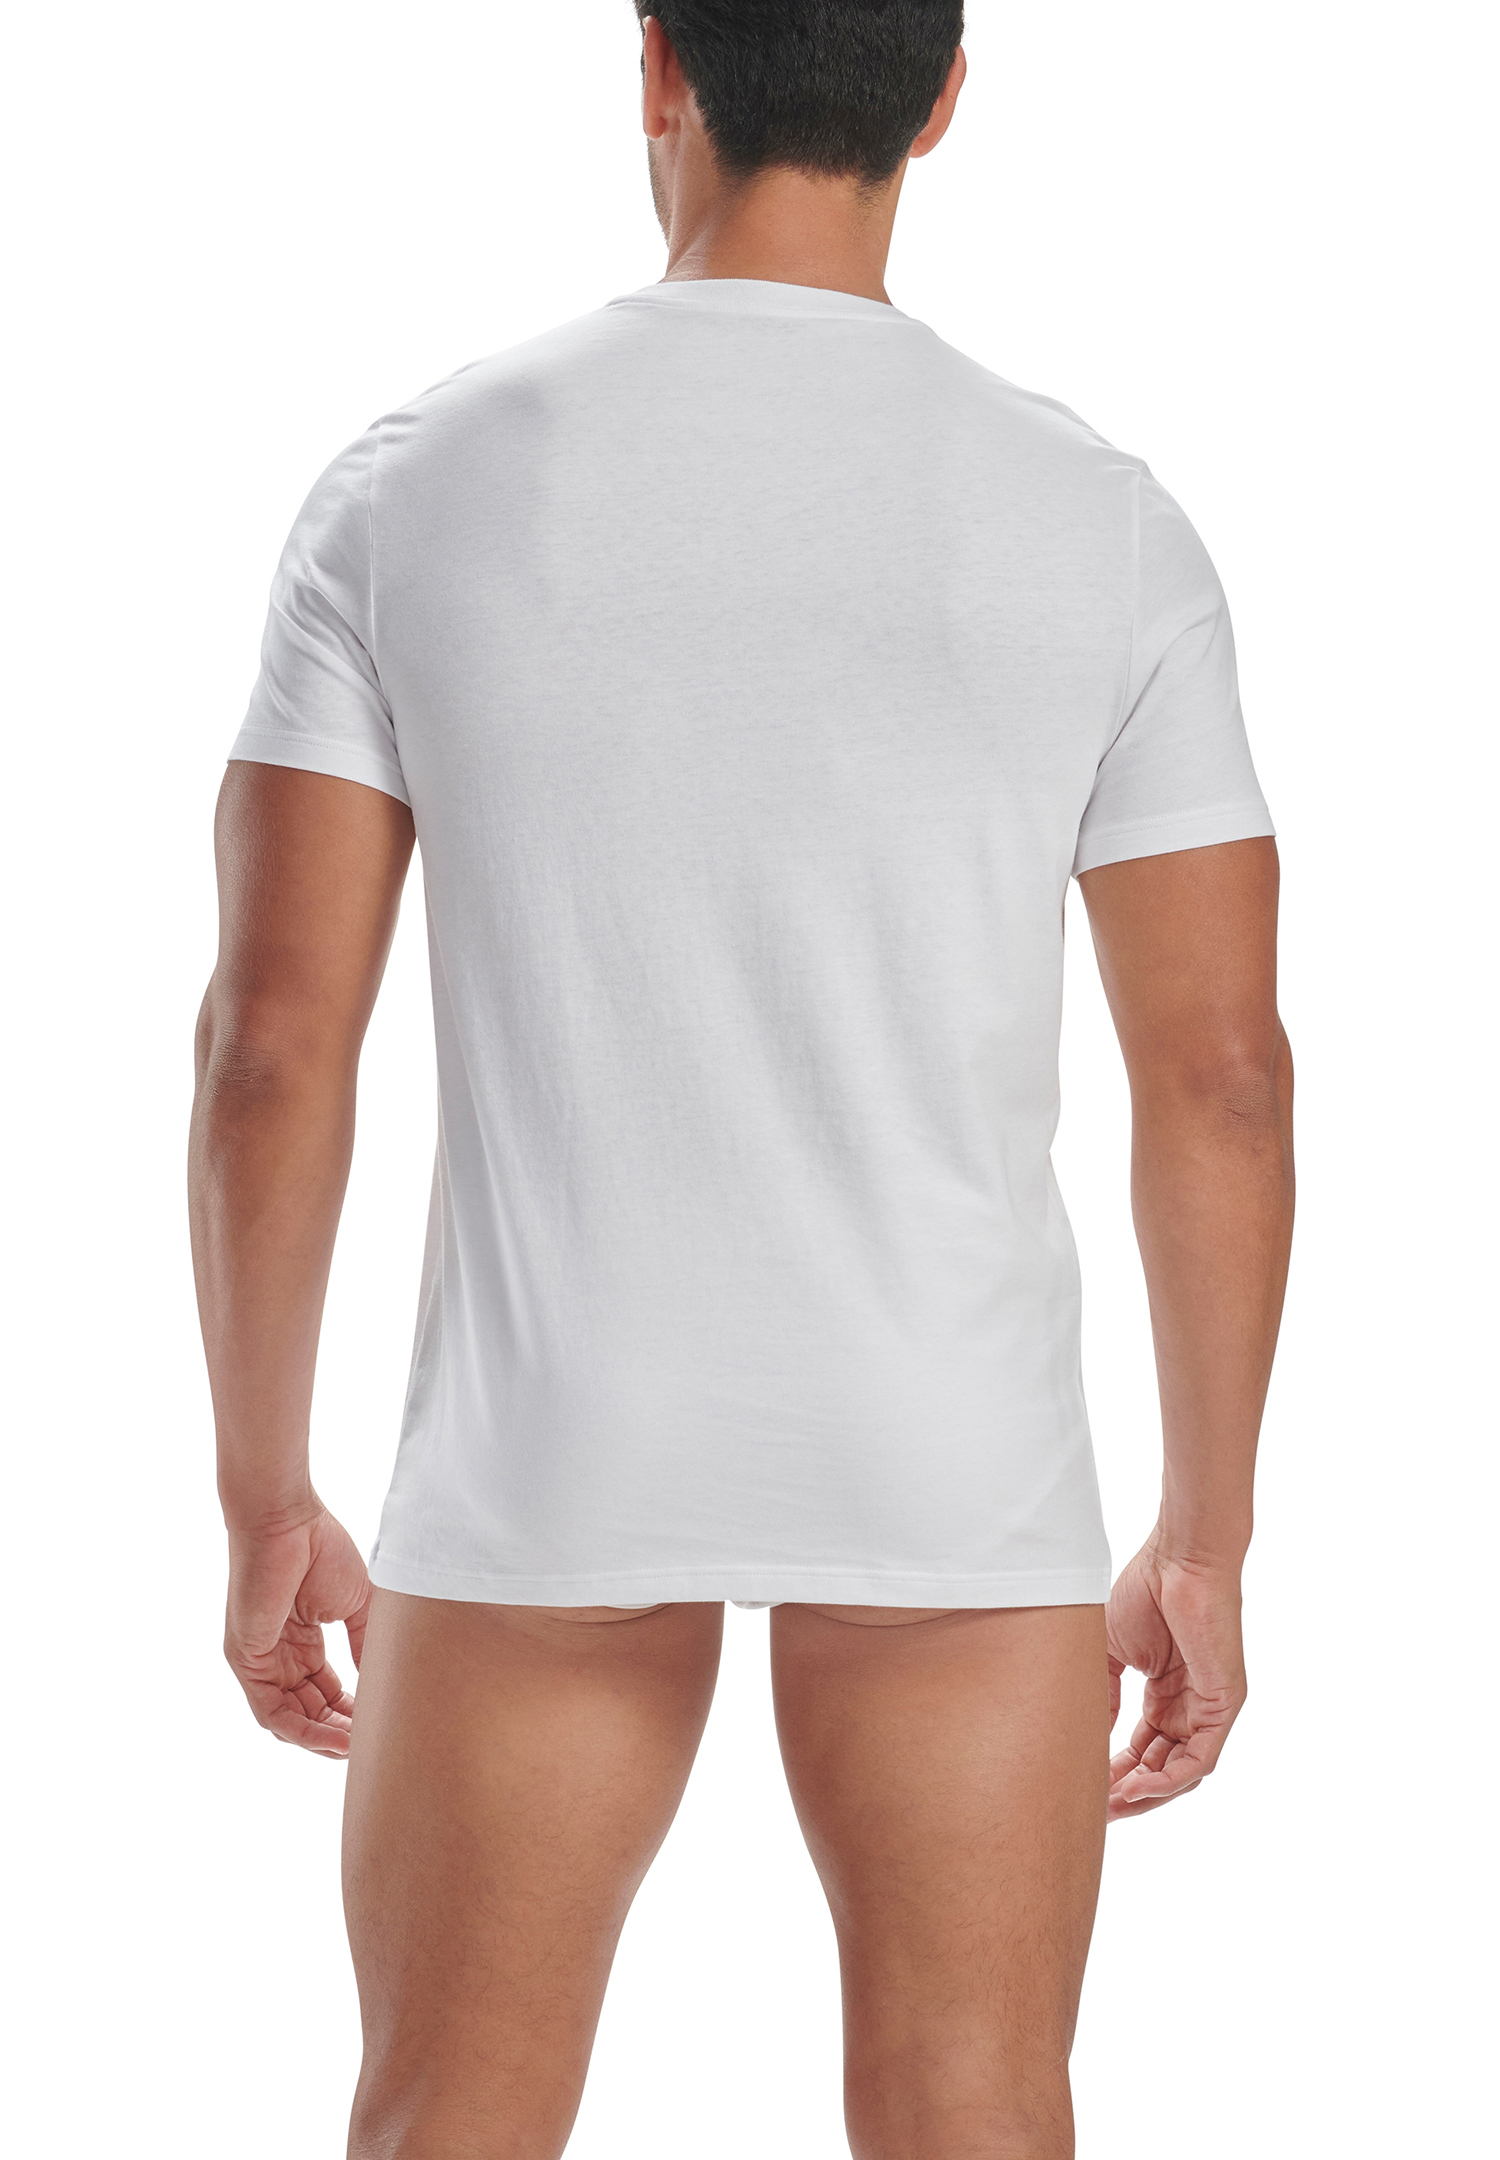 adidas V-Neck T-Shirt Men Herren Unterhemd V-Ausschnitt langlebig 6 er Pack